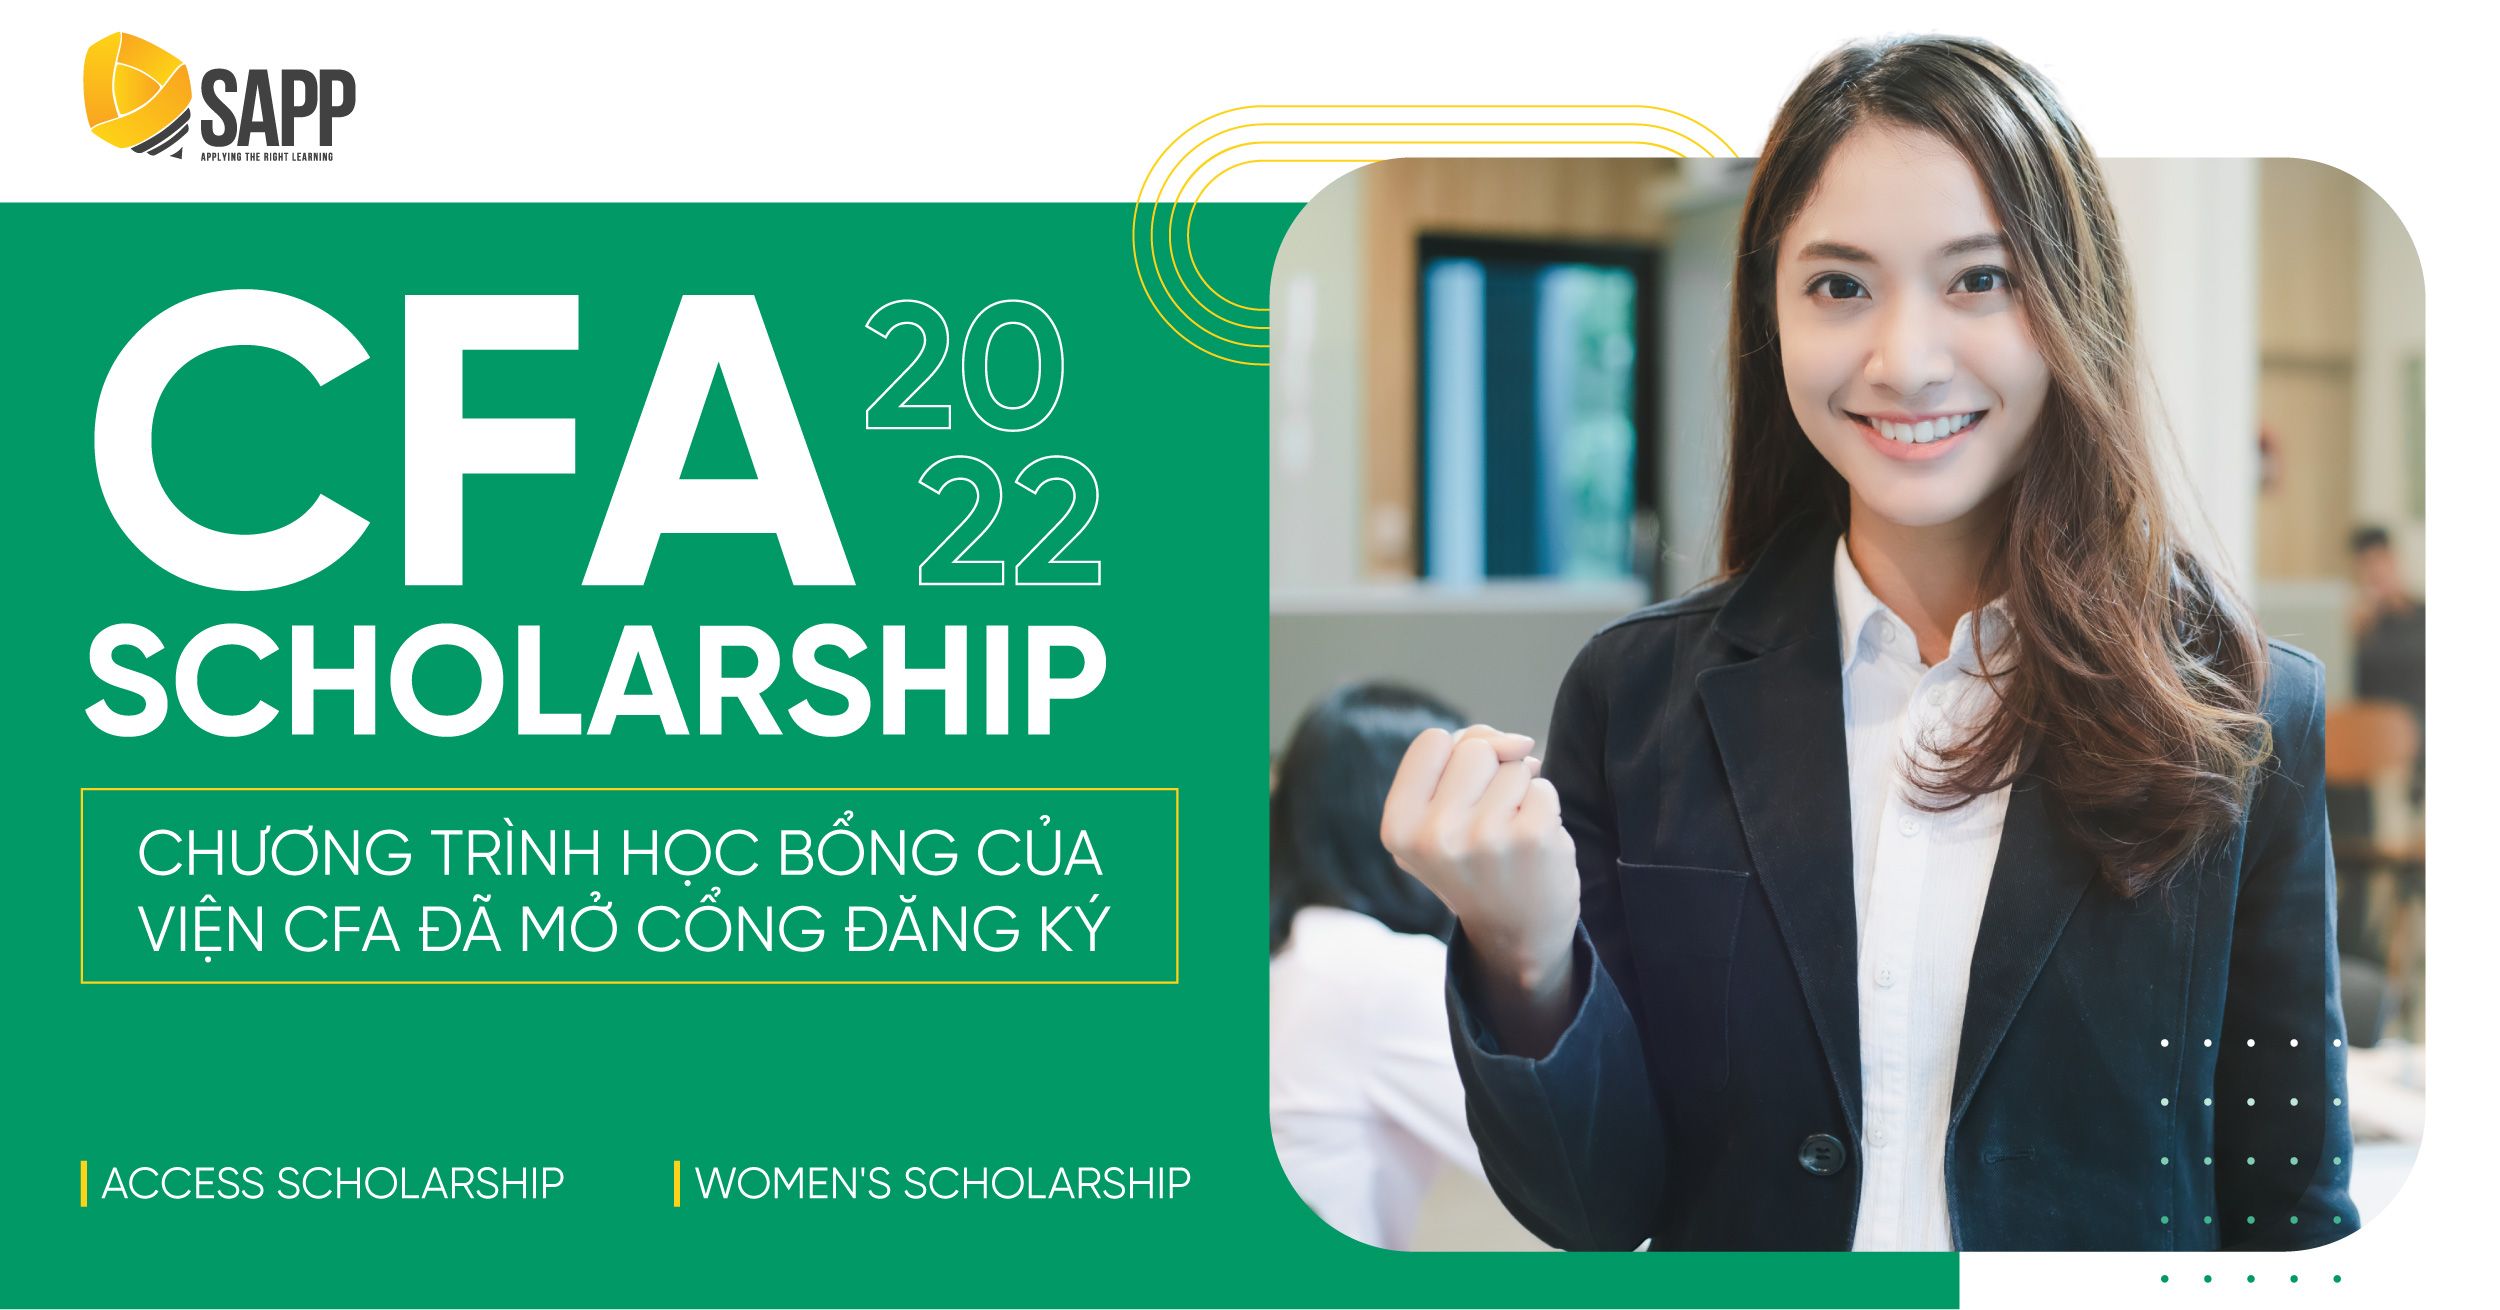 CFA Scholarship 2022: CFA Institute Chính Thức Mở Đơn Đăng Ký Nhận Học Bổng Access Scholarship Và Women’s Scholarship